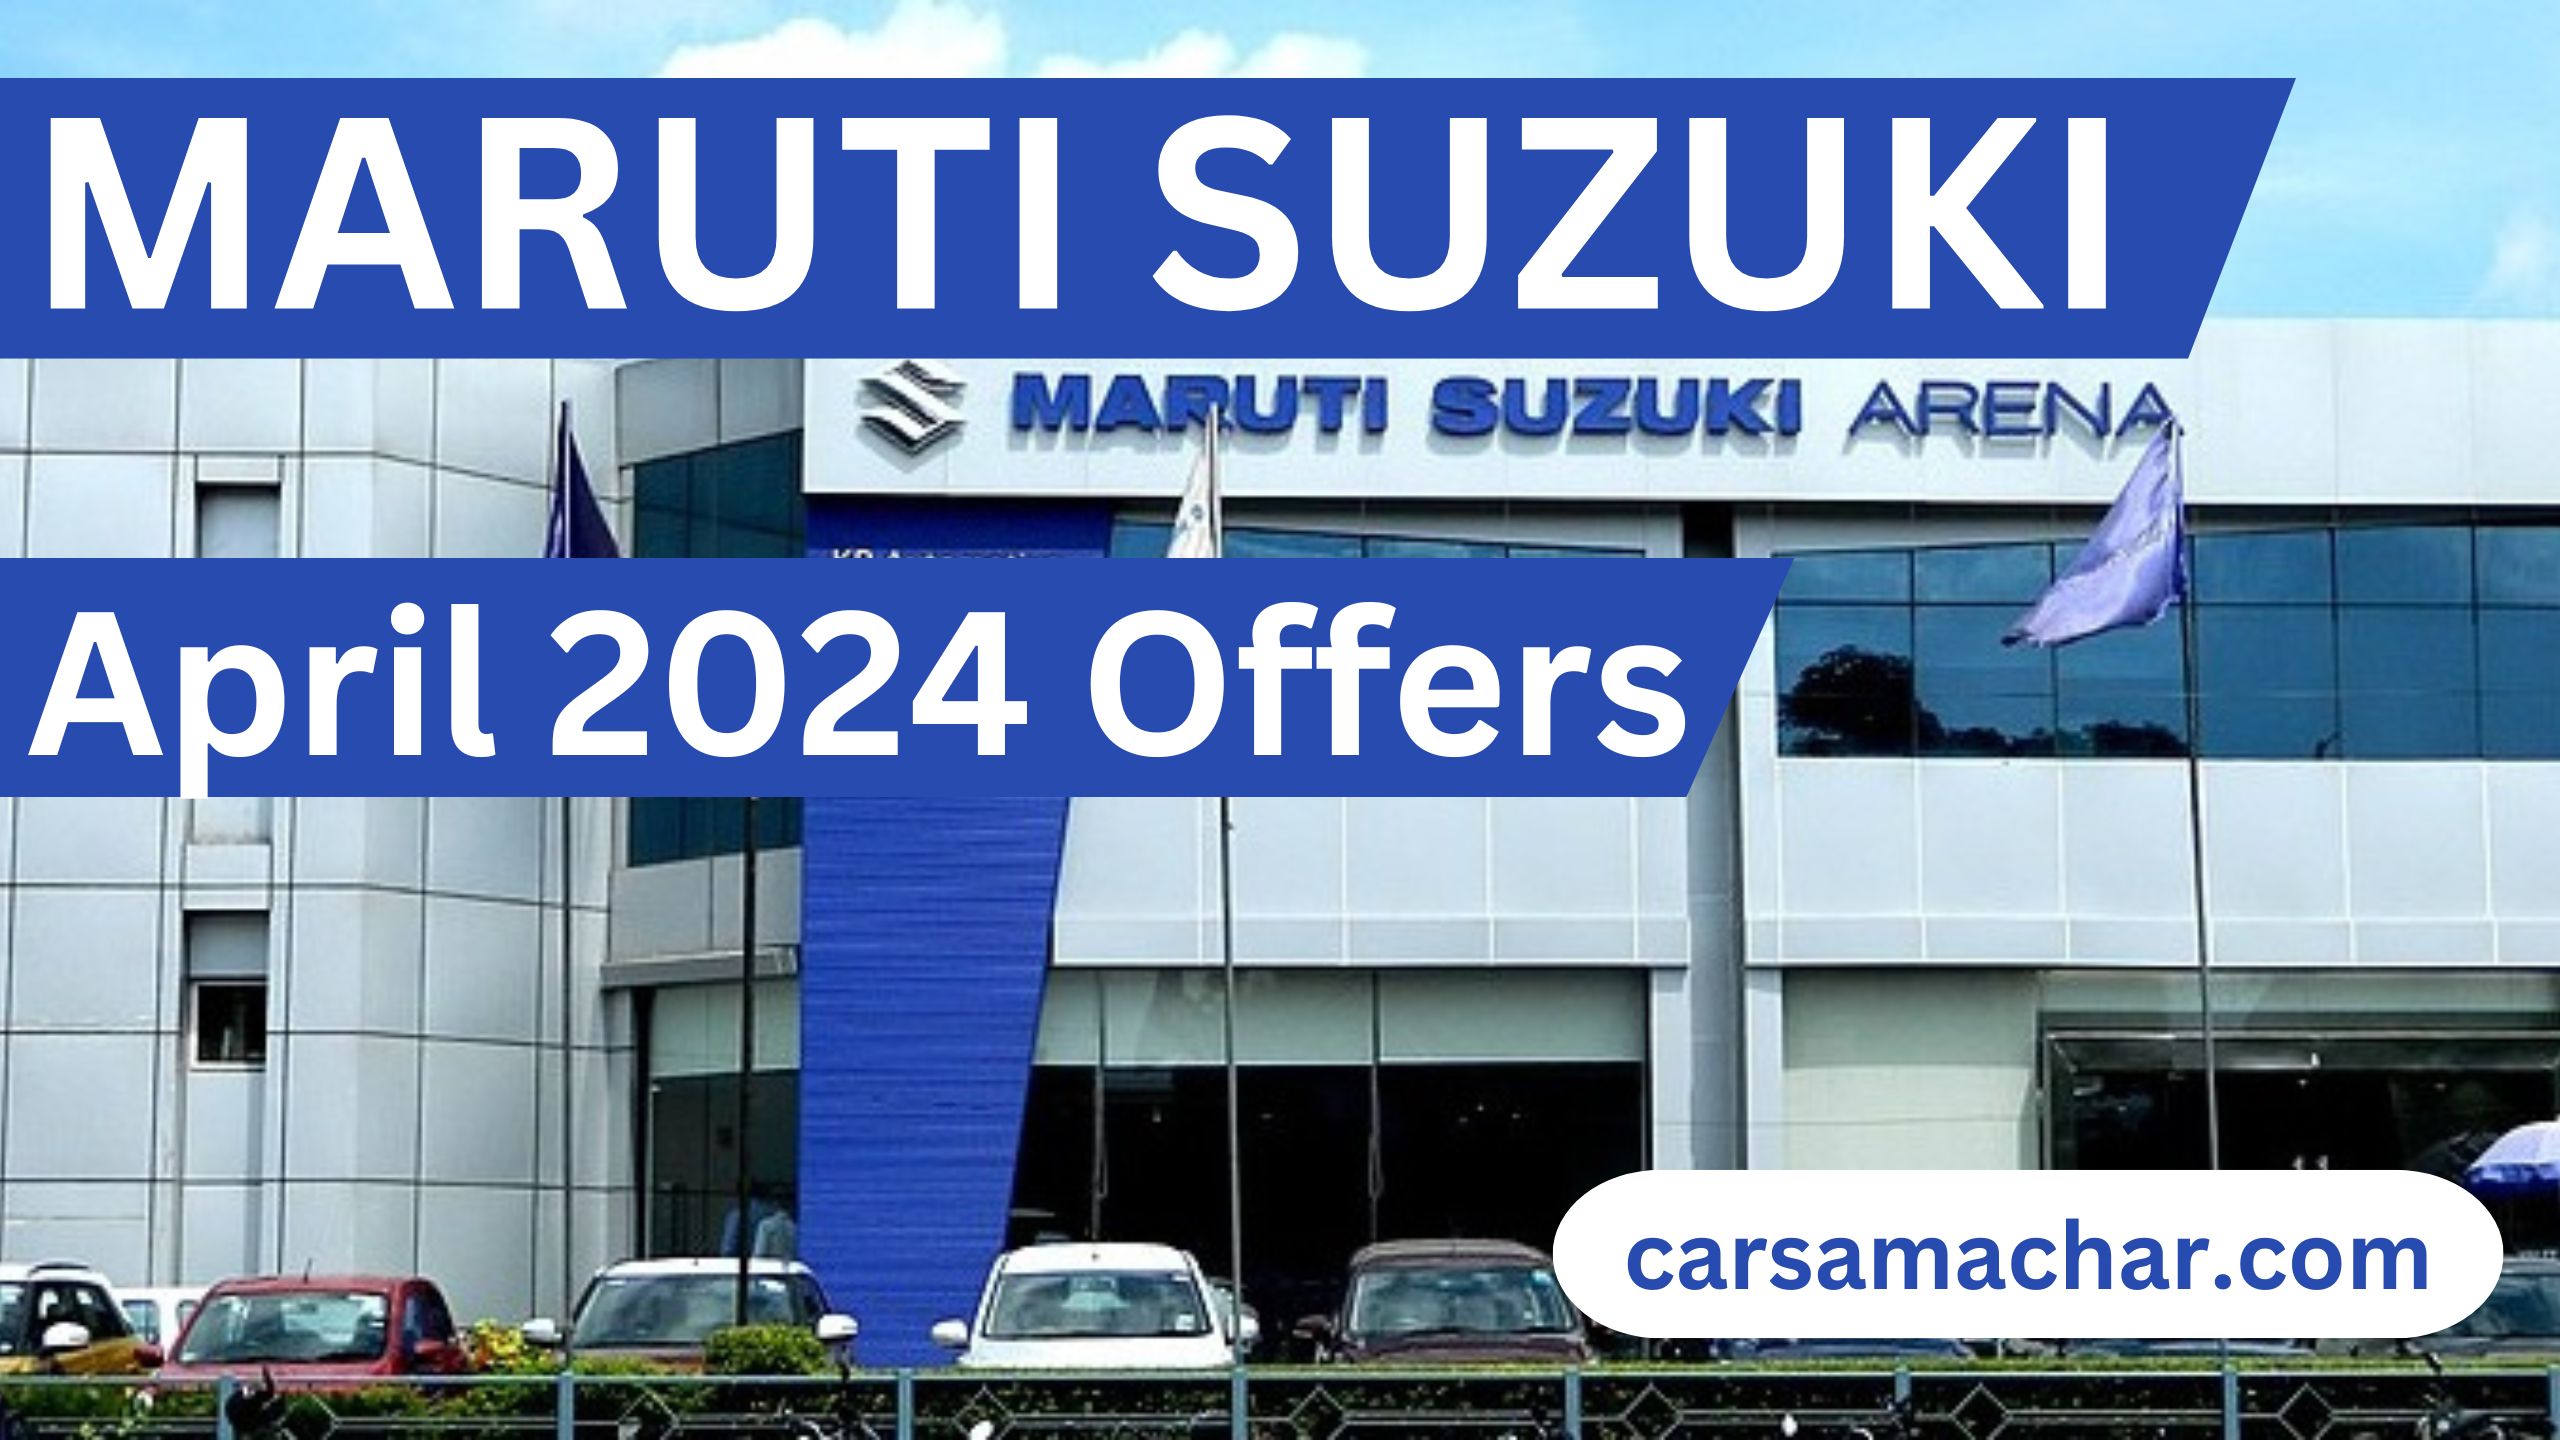 Maruti Suzuki April 2024 Offers : Grand Discount Offer for Maruti Lovers